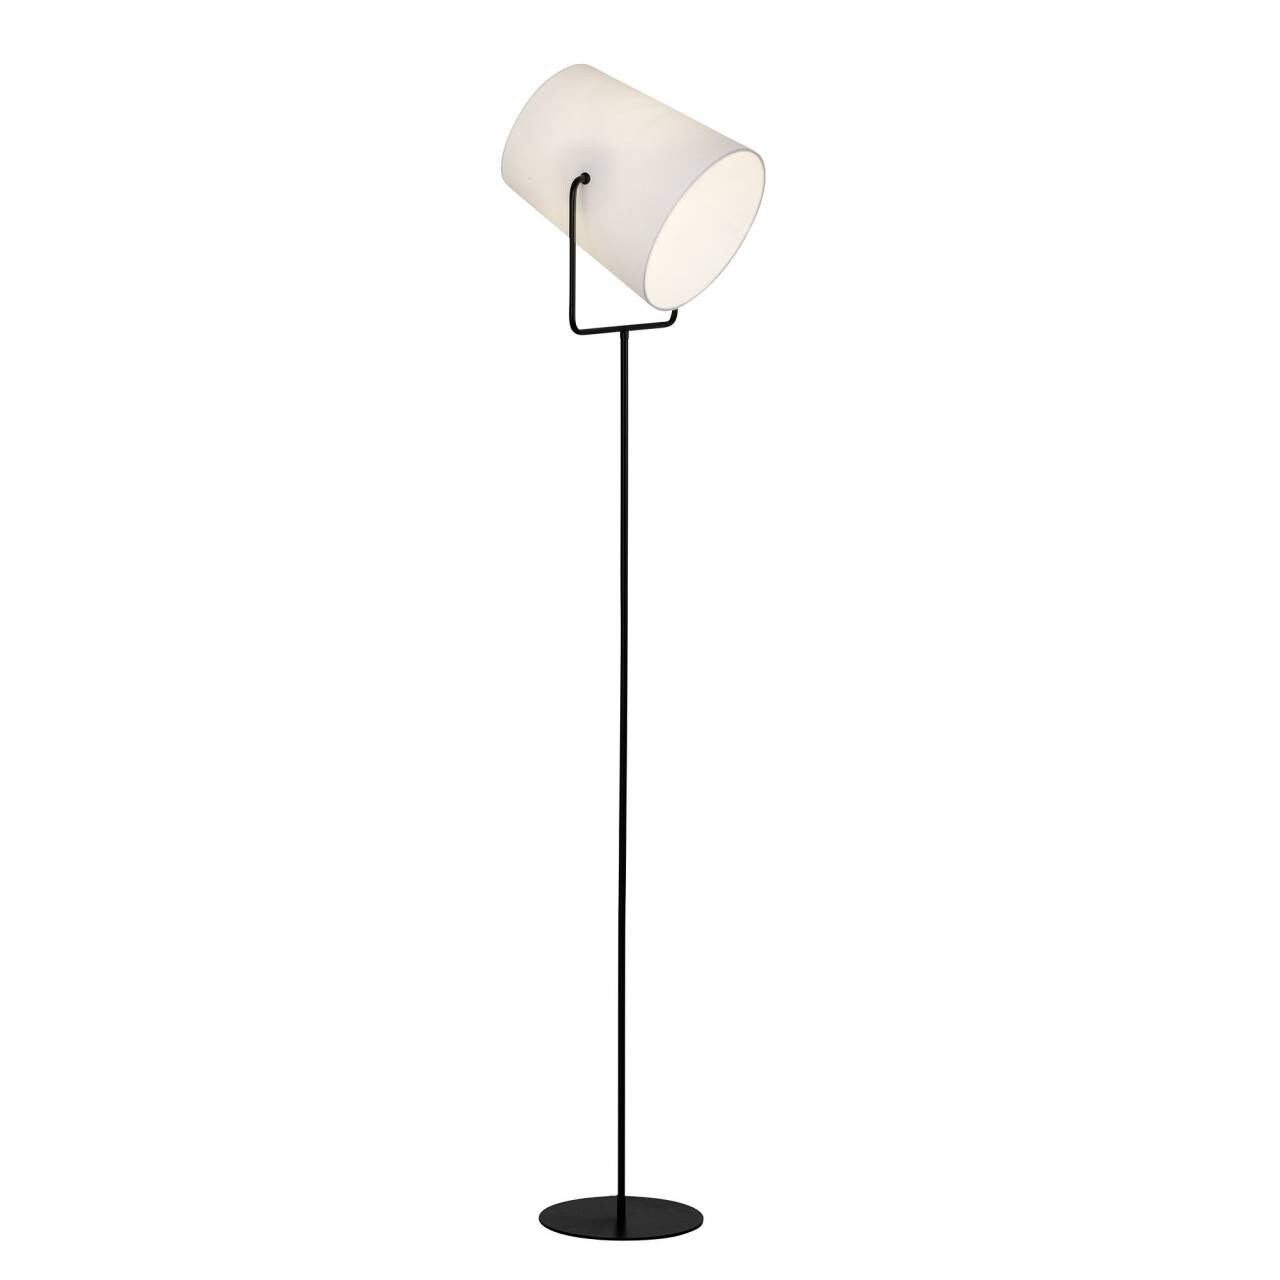 BRILLIANT Lampe Bucket Standleuchte 1flg schwarz/weiß   1x A60, E27, 60W, geeignet für Normallampen (nicht enthalten)   